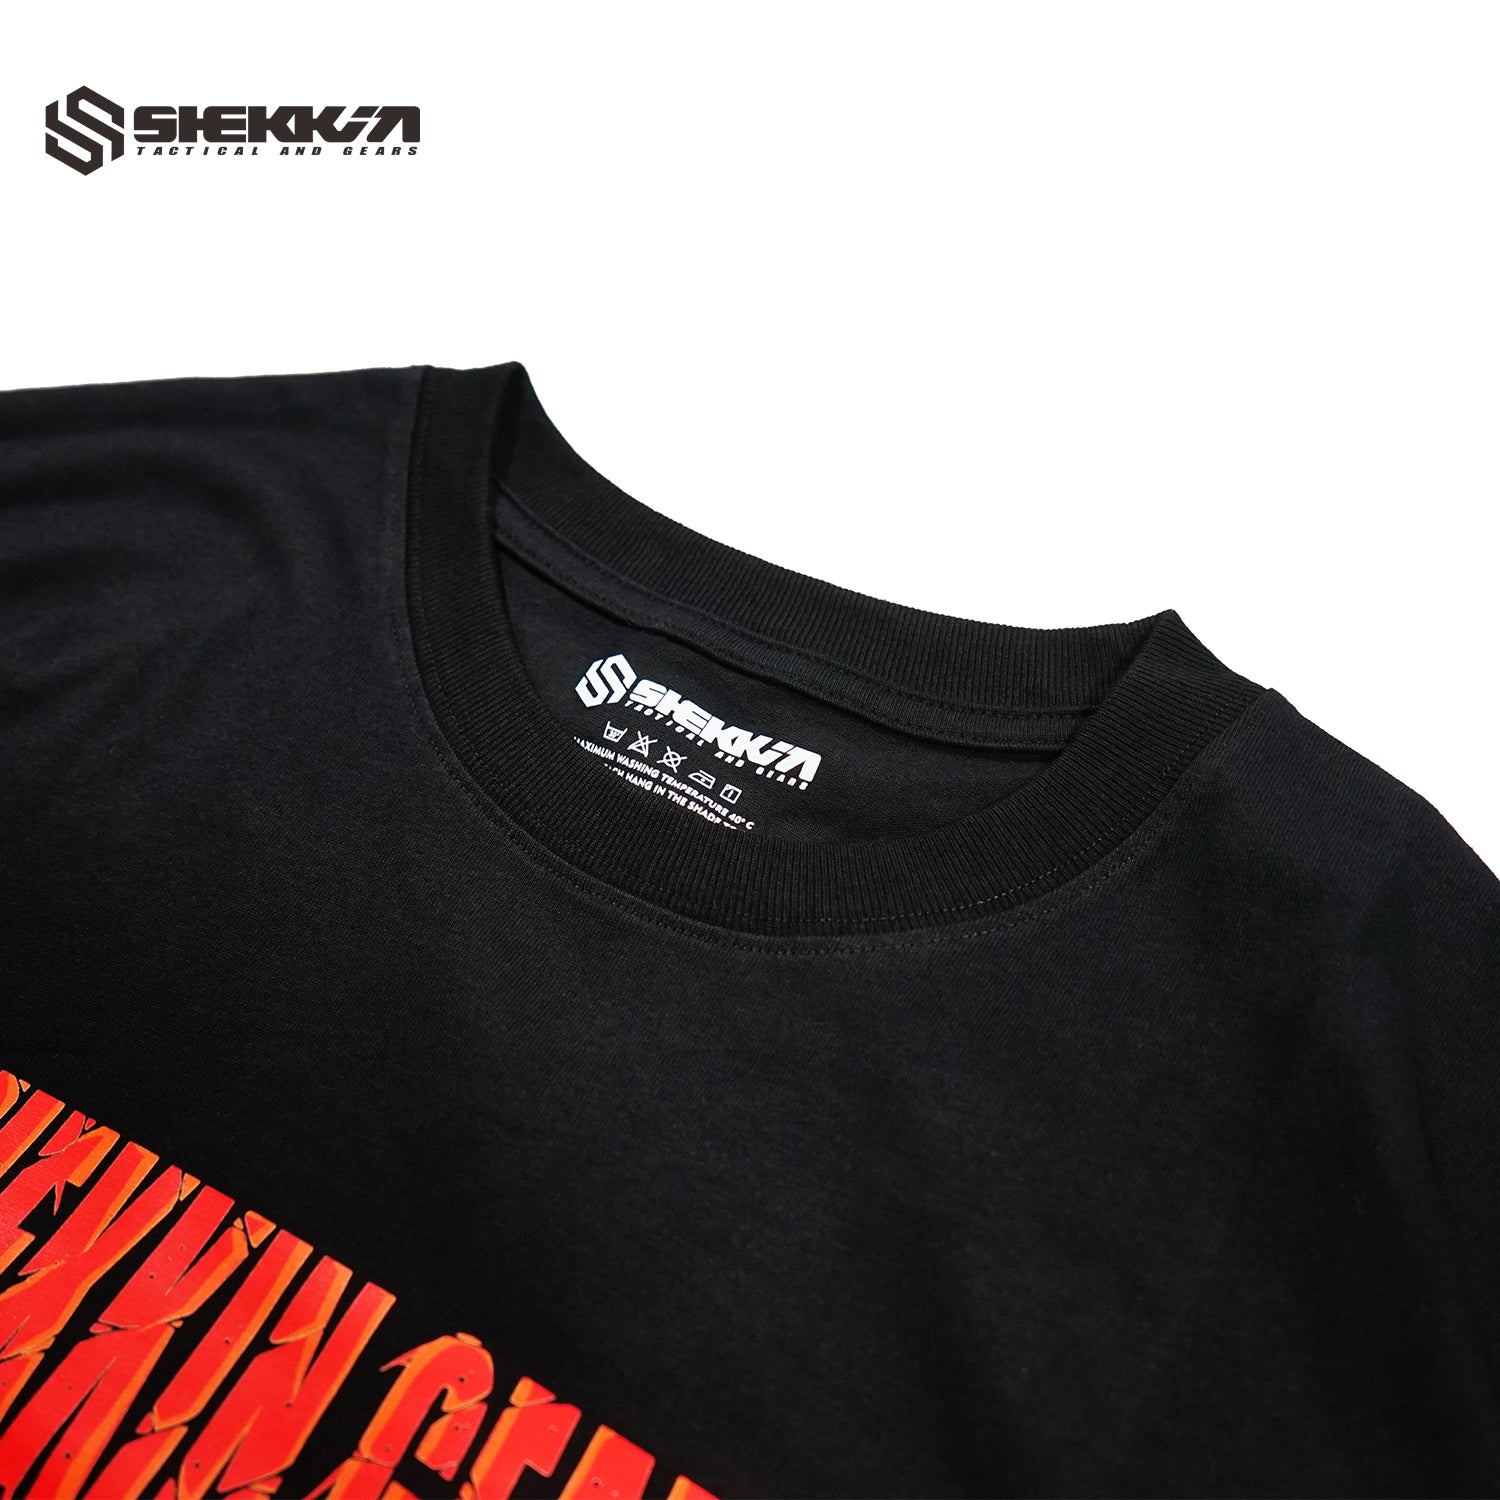 SHEKKIN GEARS HELL TAILOR T-Shirt - Shekkin Gears